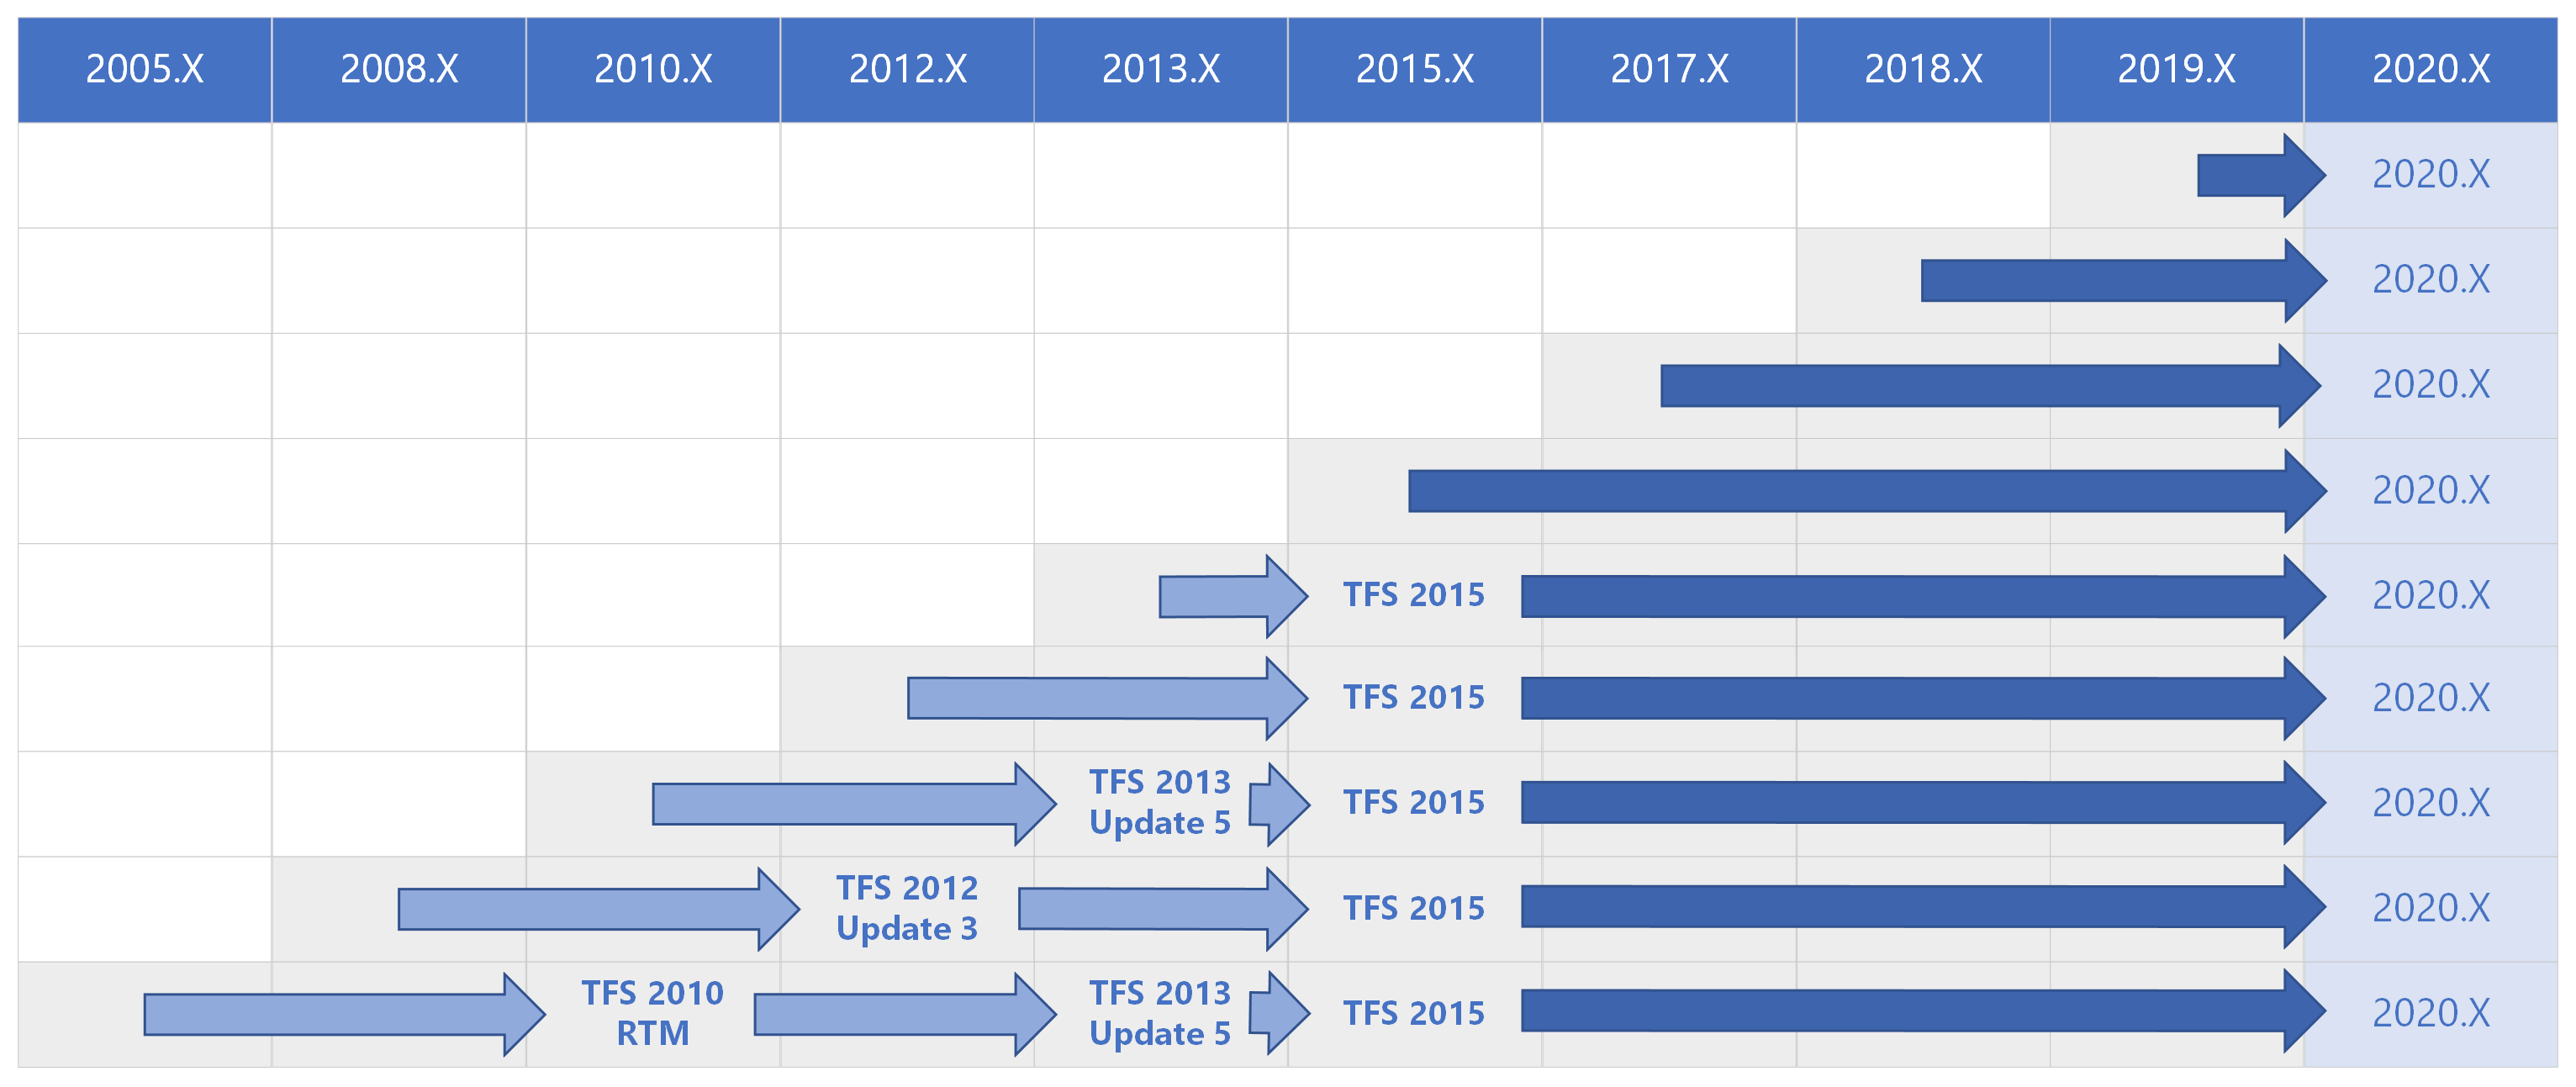 Matriz de caminho de atualização do Azure DevOps 2020 para todas as versões anteriores.